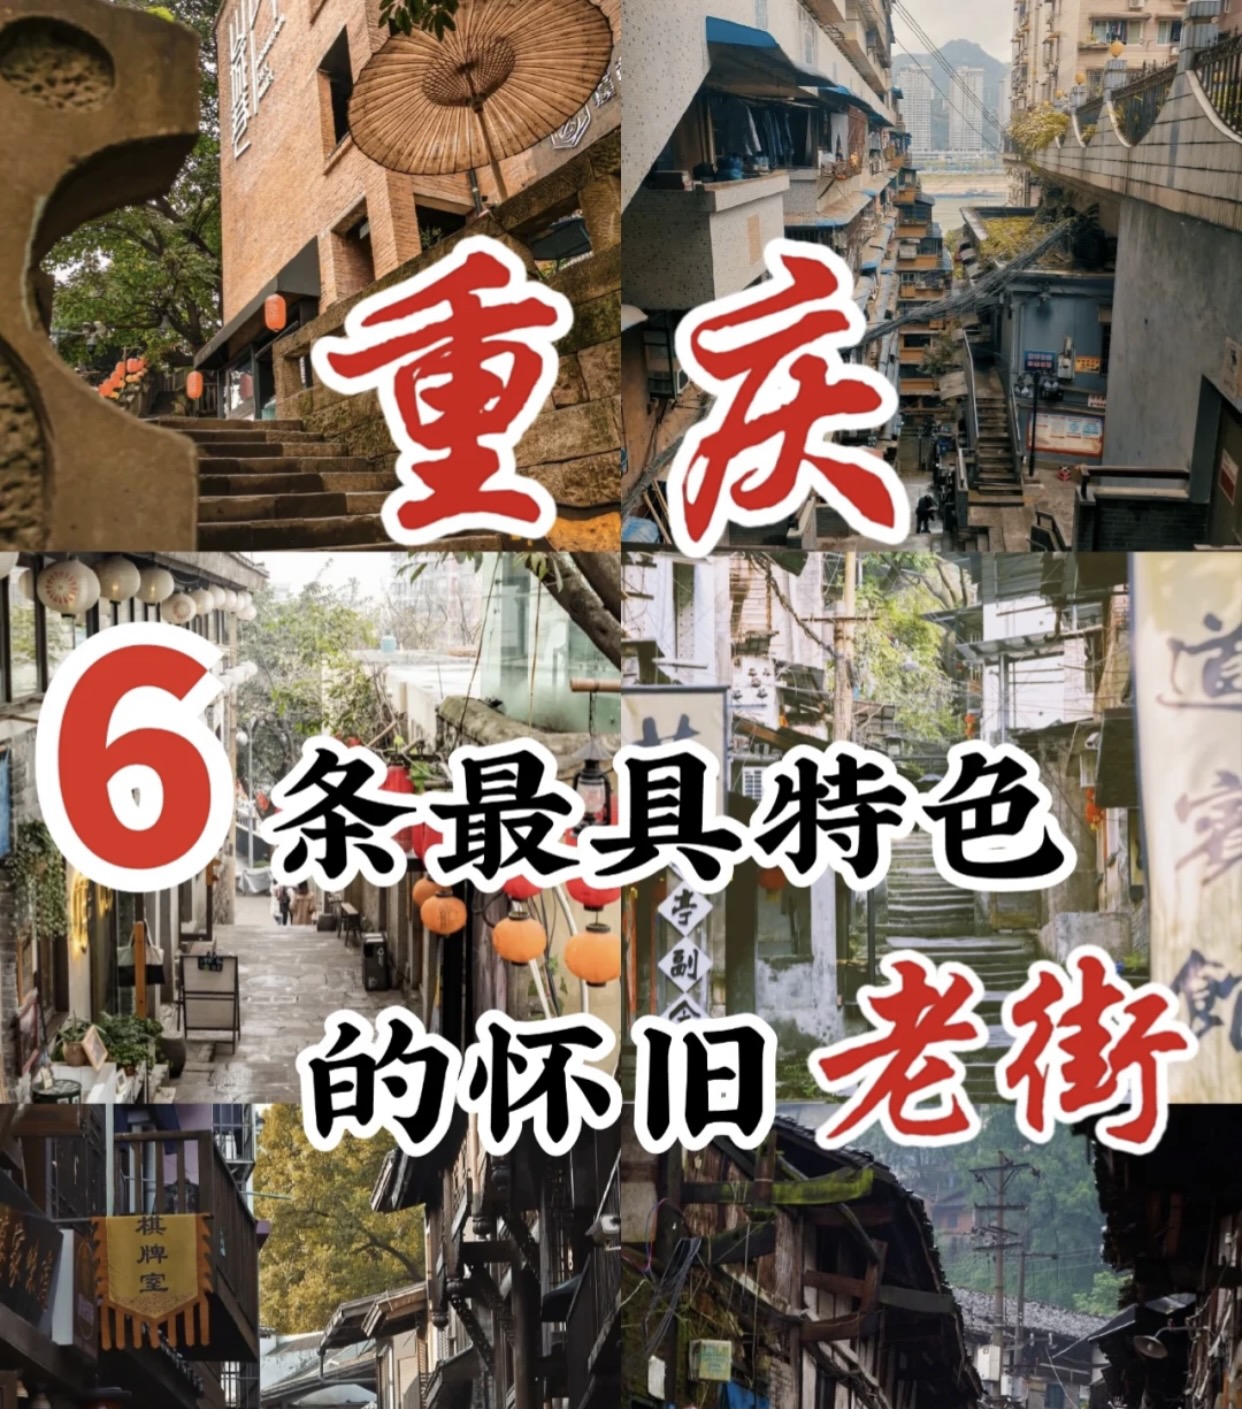 6 con phố cổ hoài cổ đặc sắc nhất trong cẩm nang du lịch Trùng Khánh-Weibo24h.com